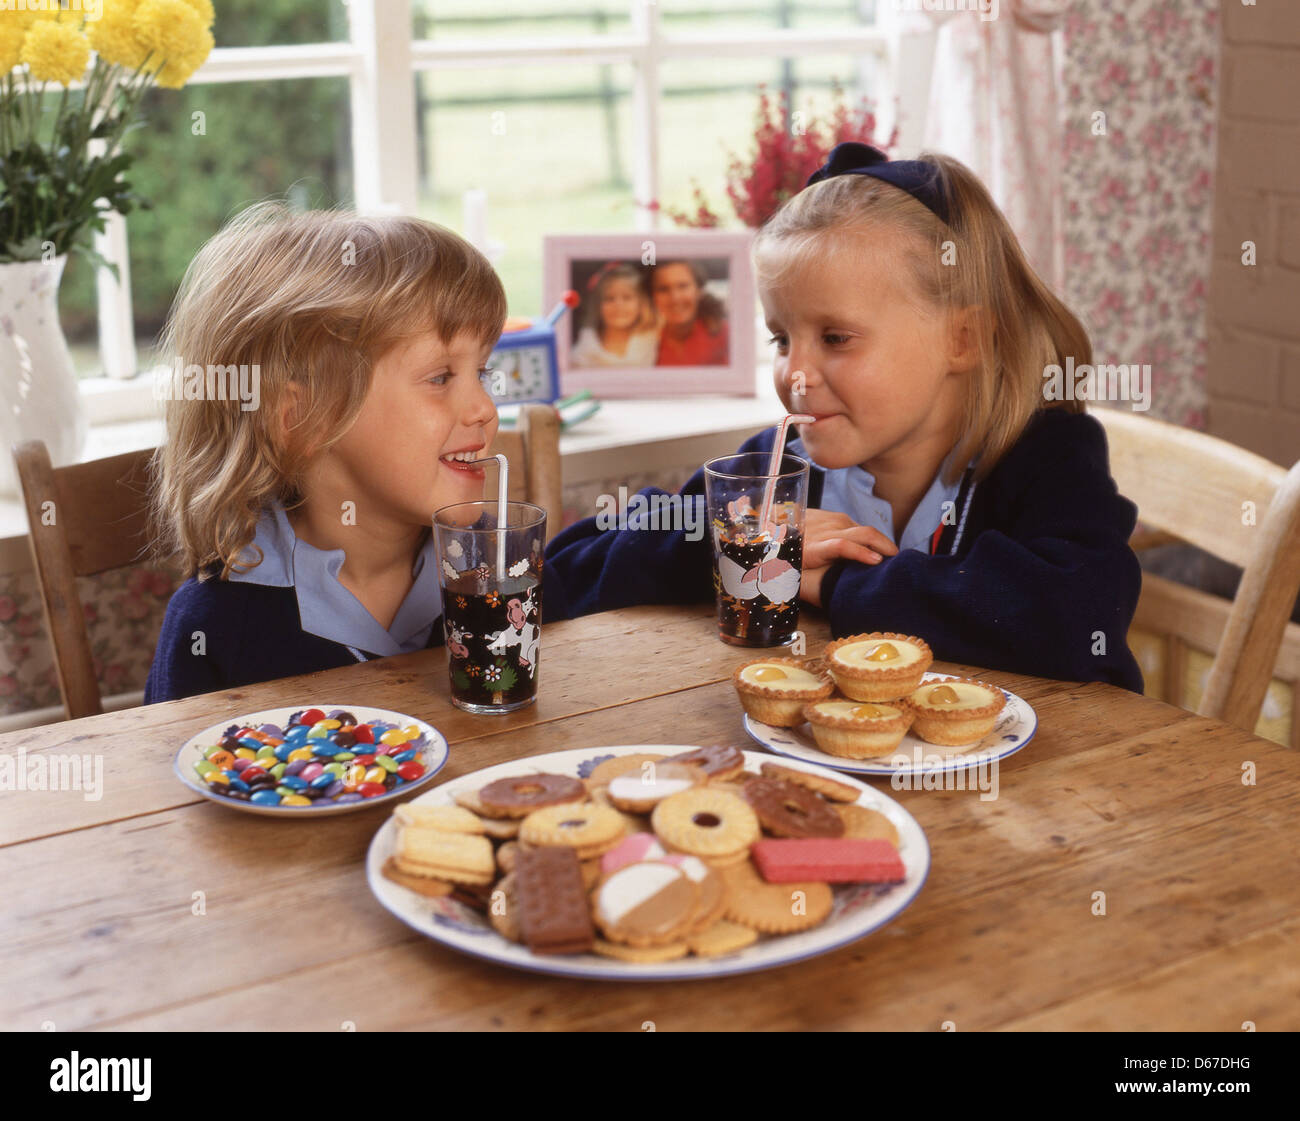 Les jeunes filles avec des boissons, gâteaux, bonbons et biscuits (aliments malsains), Sunninghill, Berkshire, Angleterre, Royaume-Uni Banque D'Images